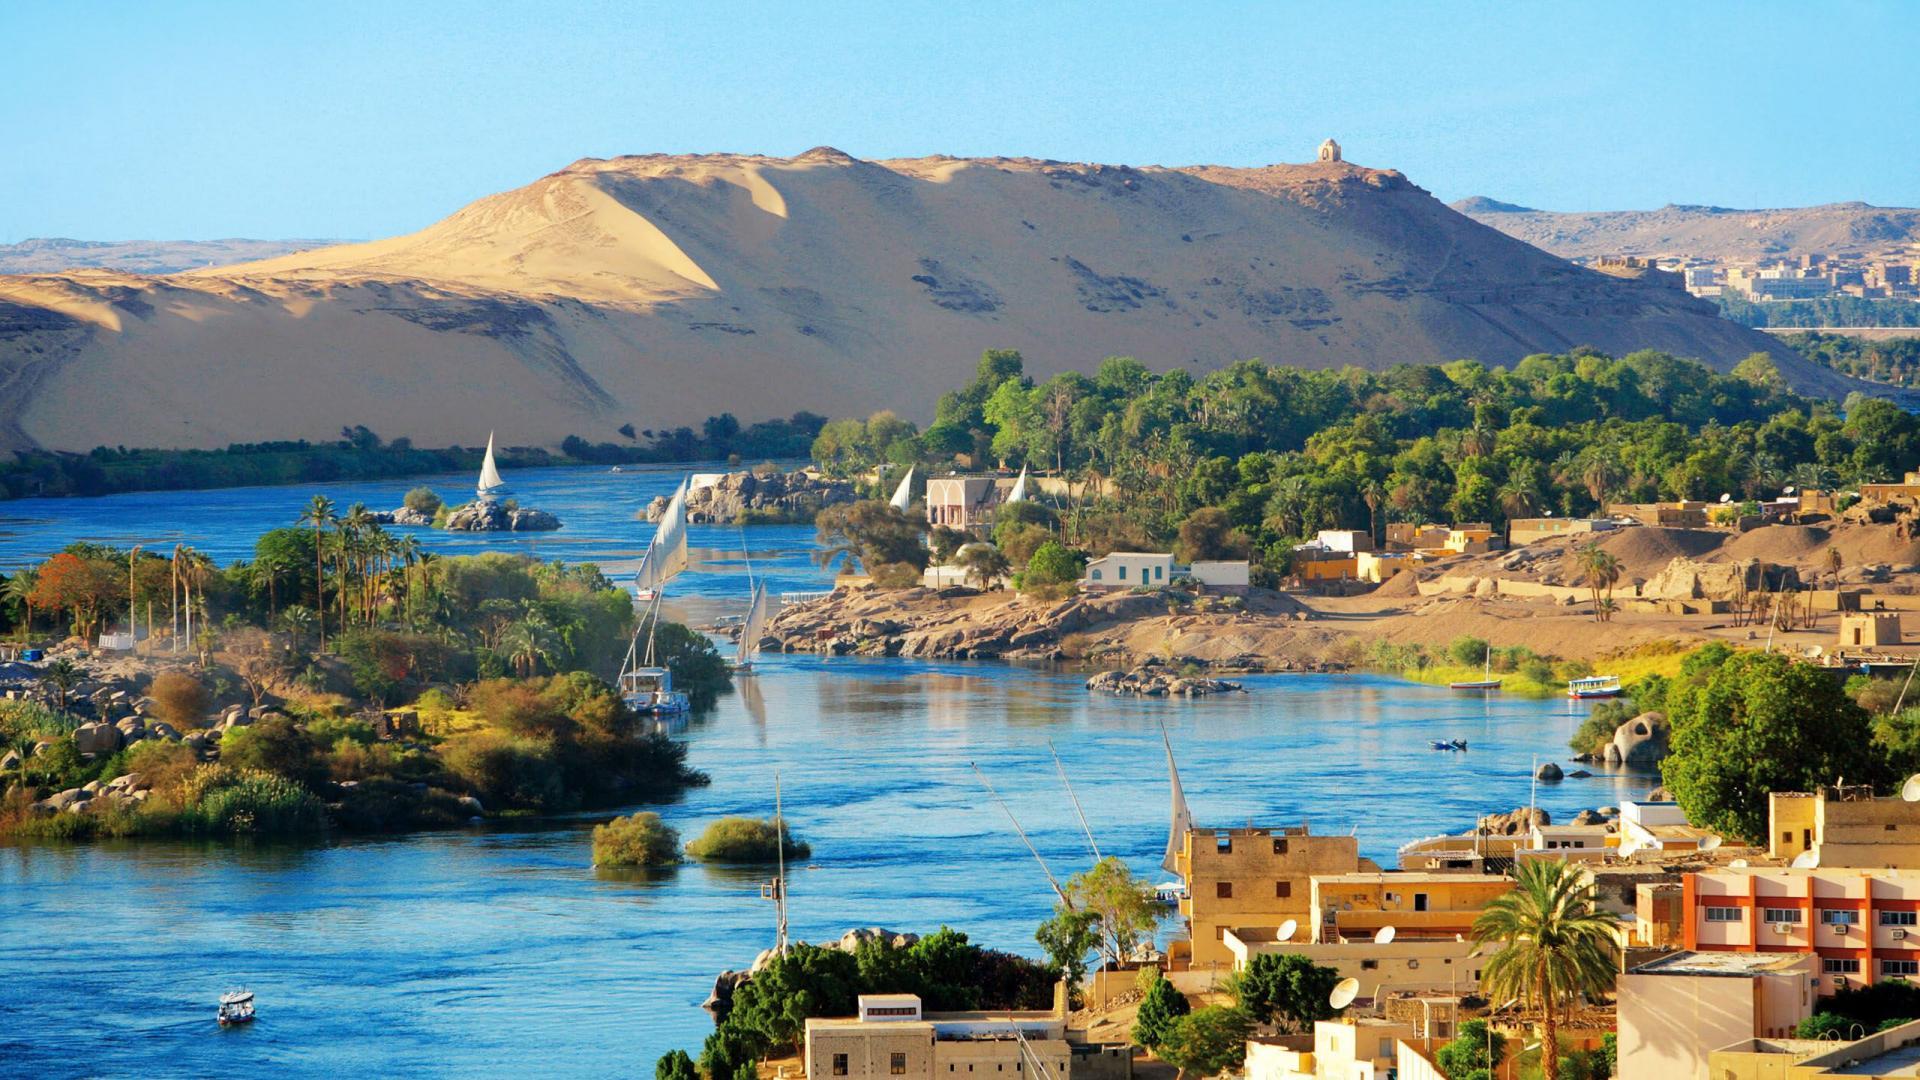 voyage egypte le caire alexandrie